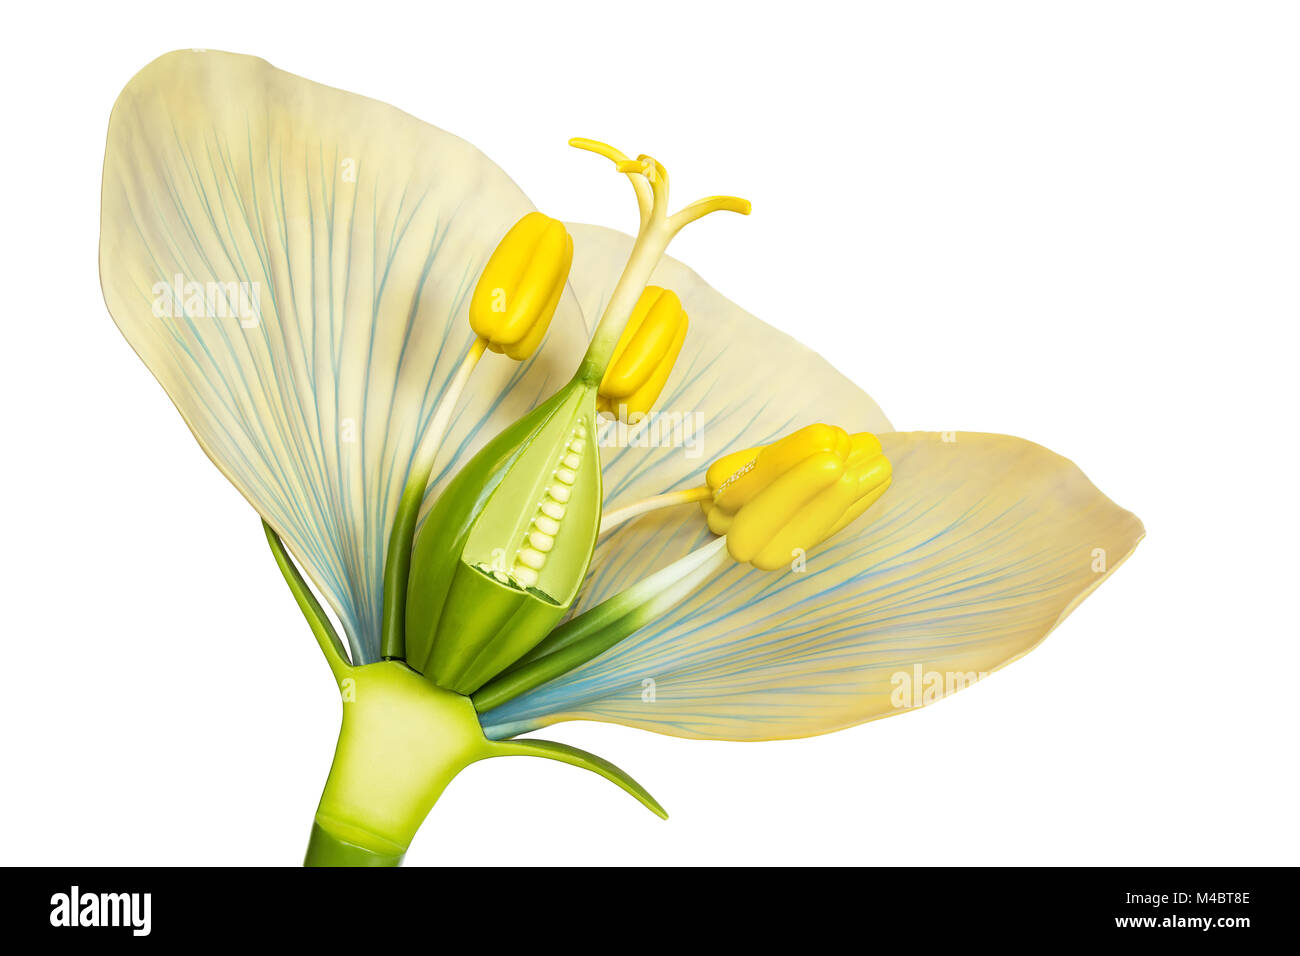 Modell der Blume mit Staubgefäße und Stempel auf Weiß Stockfoto